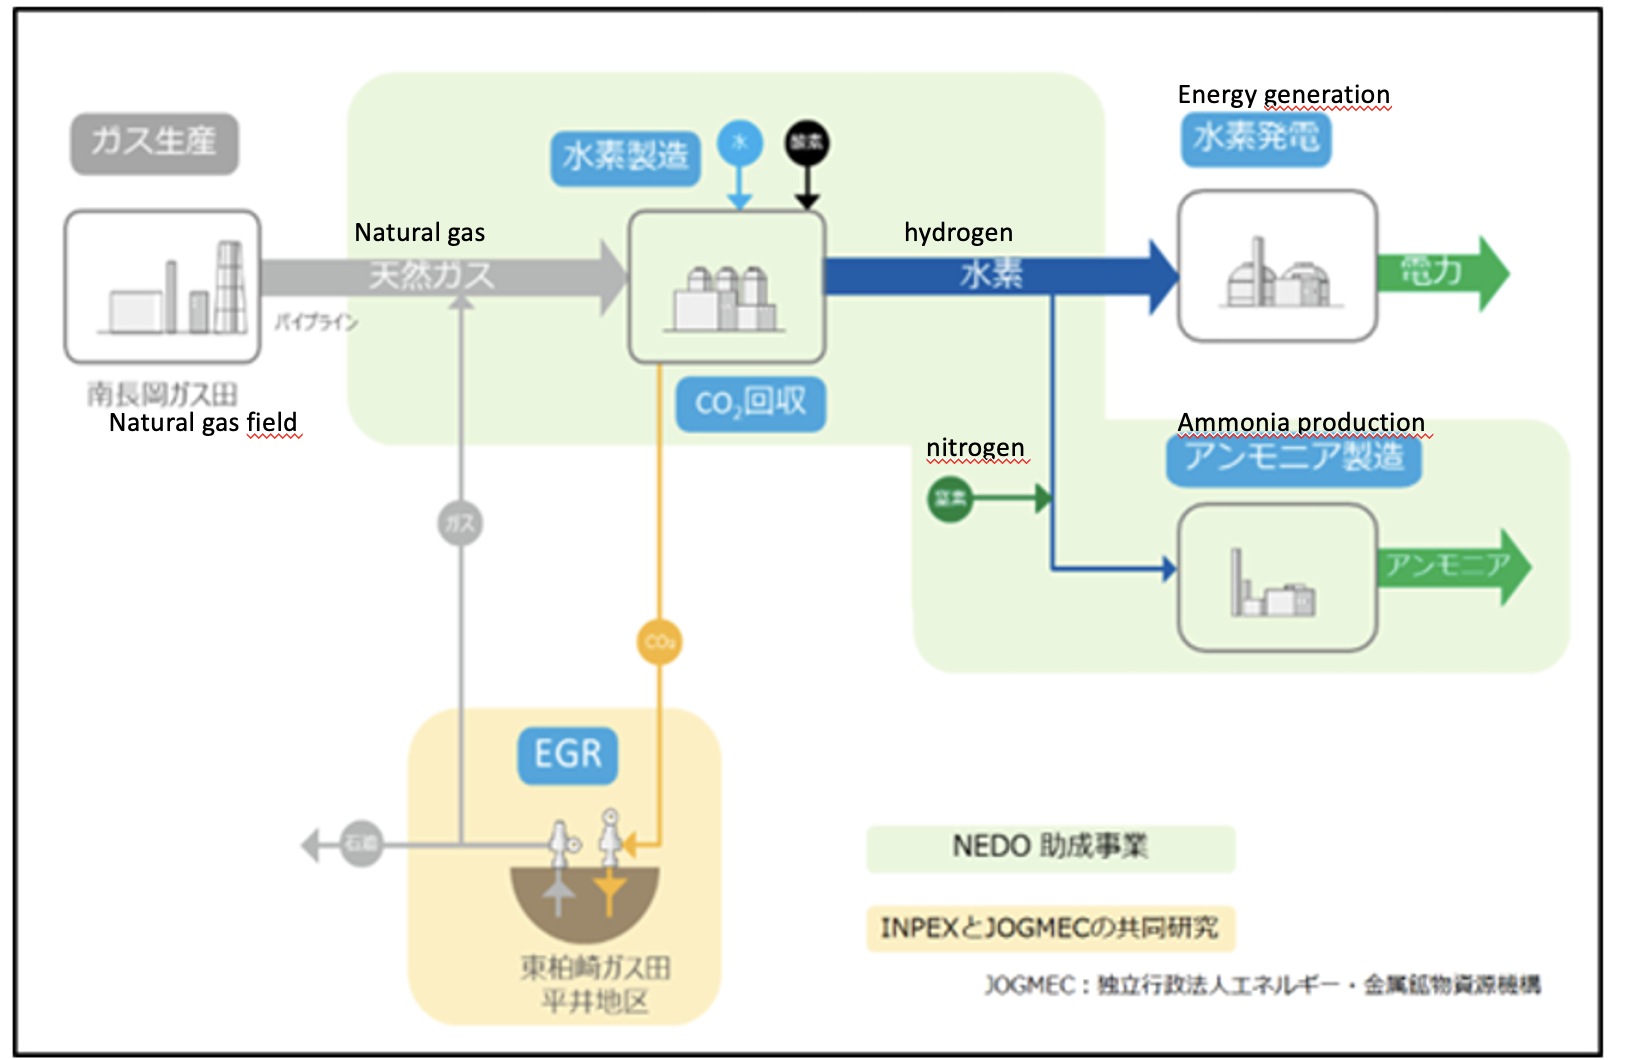 NEDO initiates program on blue ammonia production